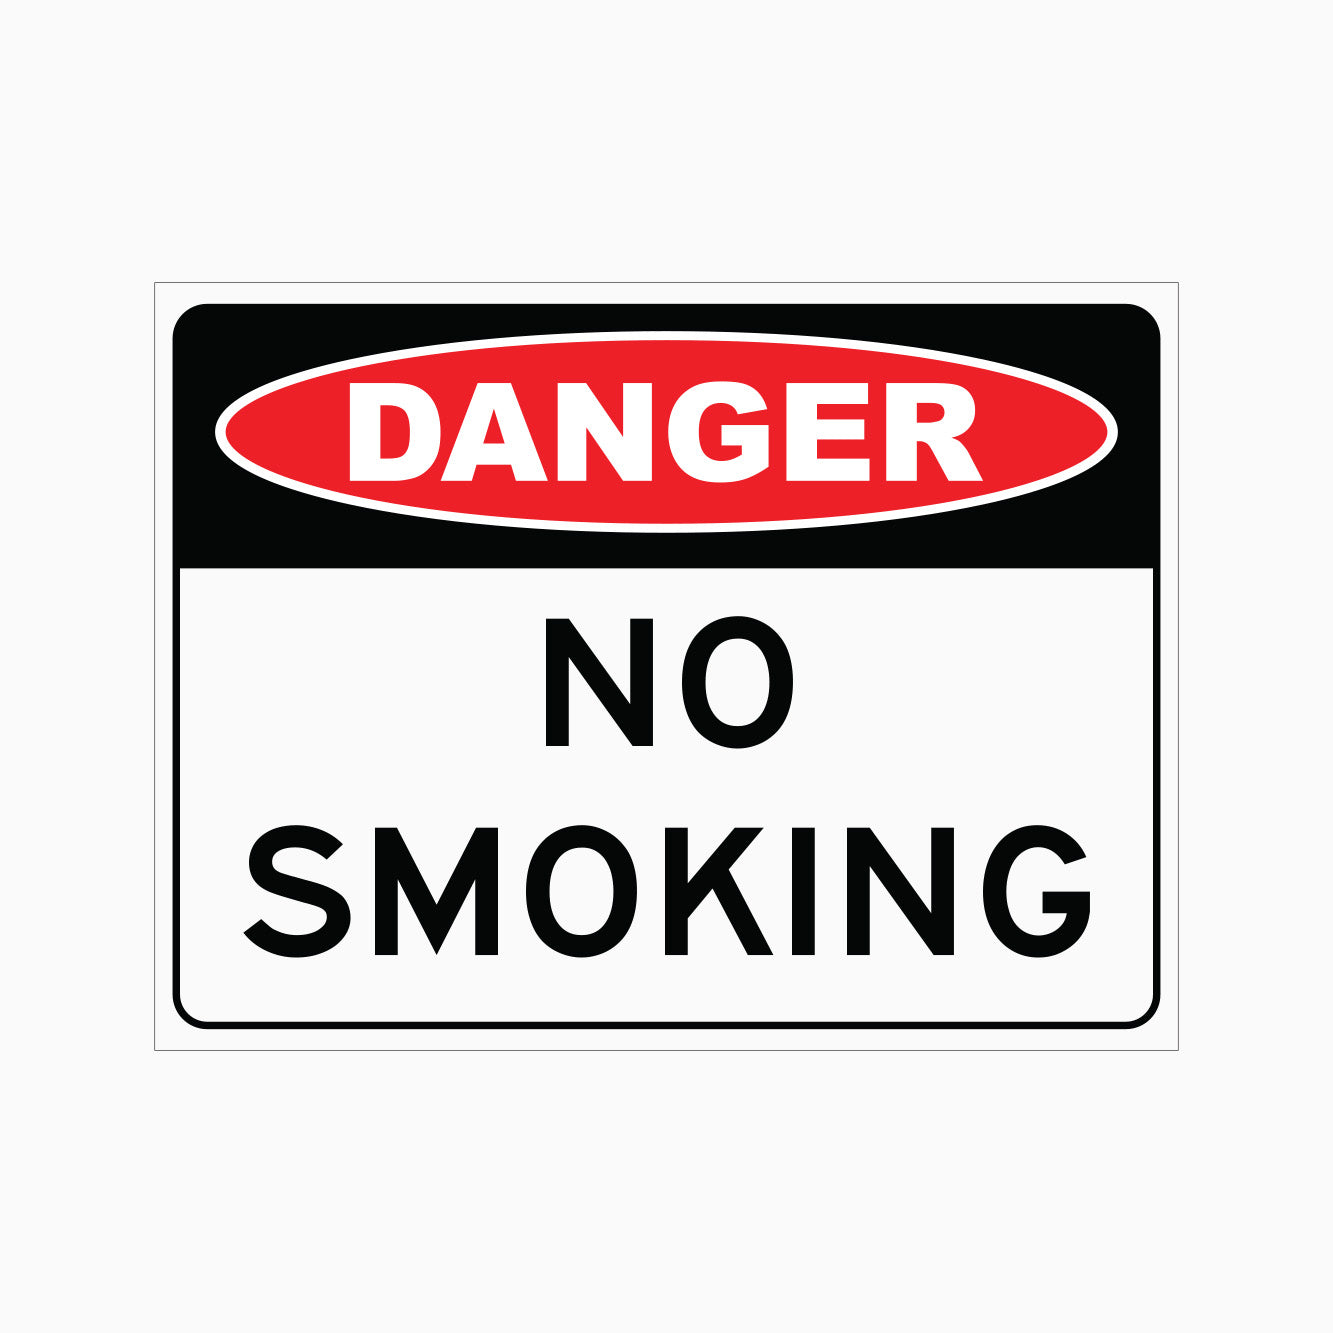 DANGER NO SMOKING SIGN - GET SIGNS